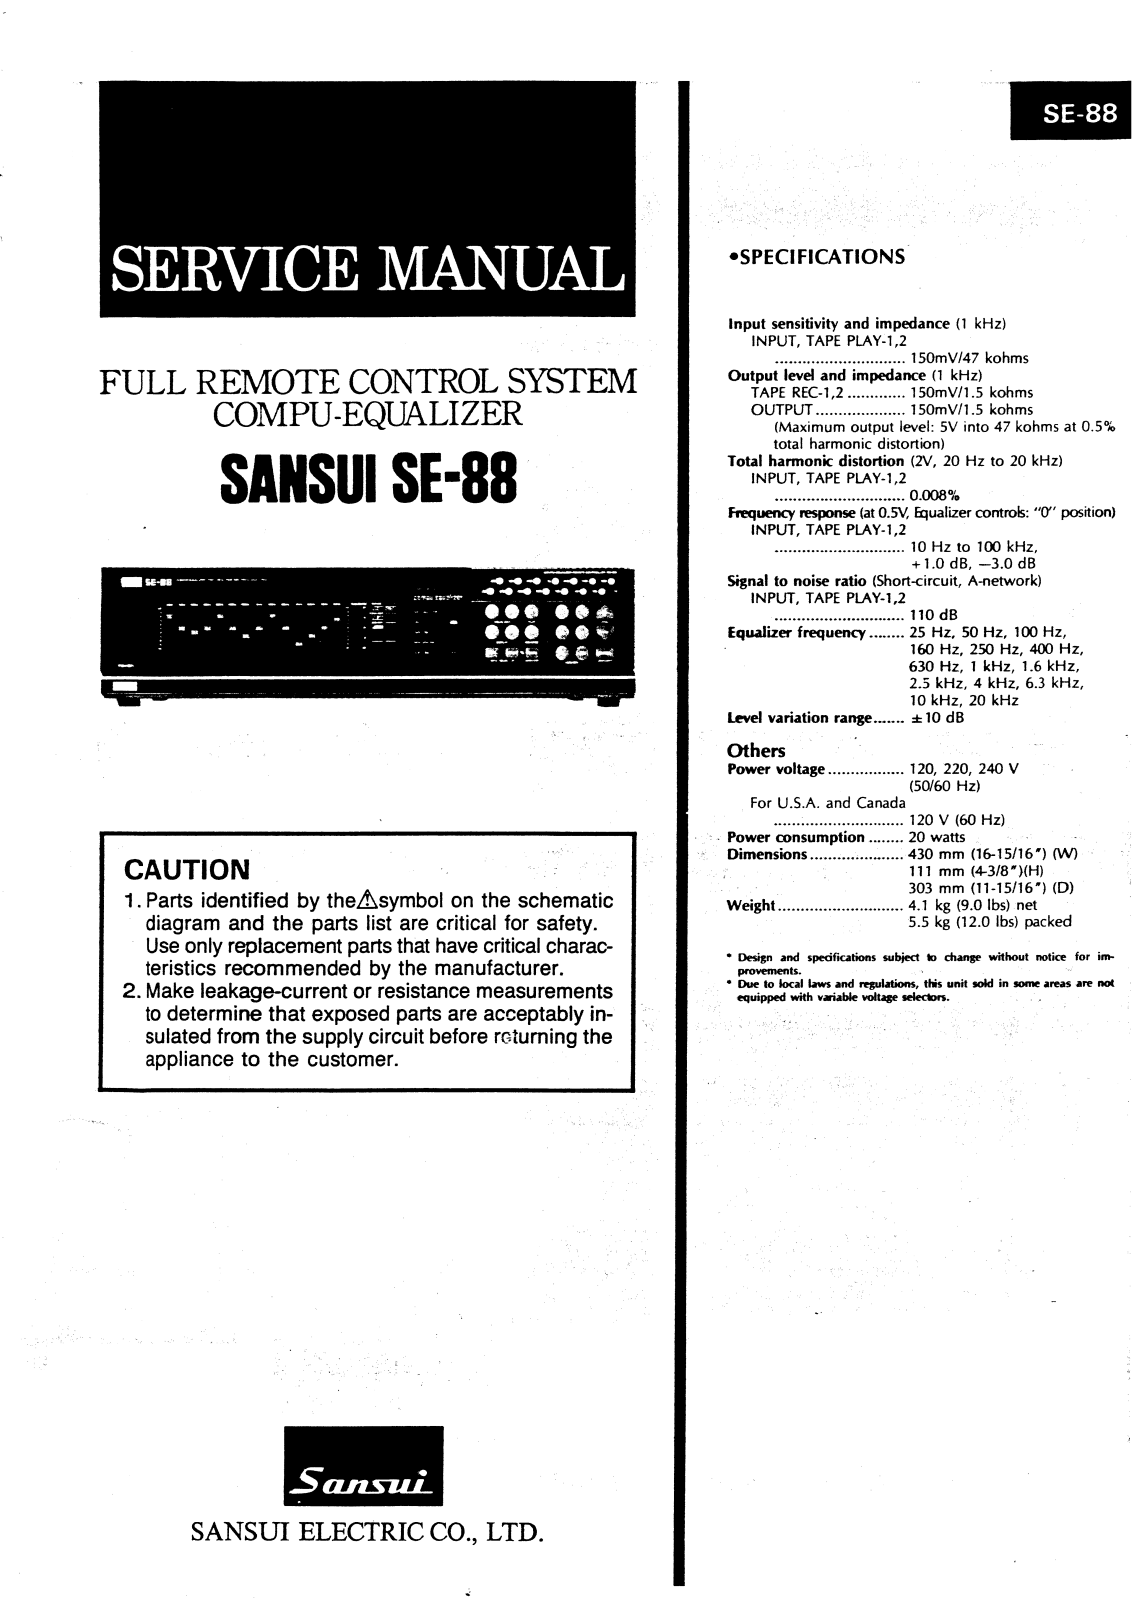 Sansui SE-88 Service manual